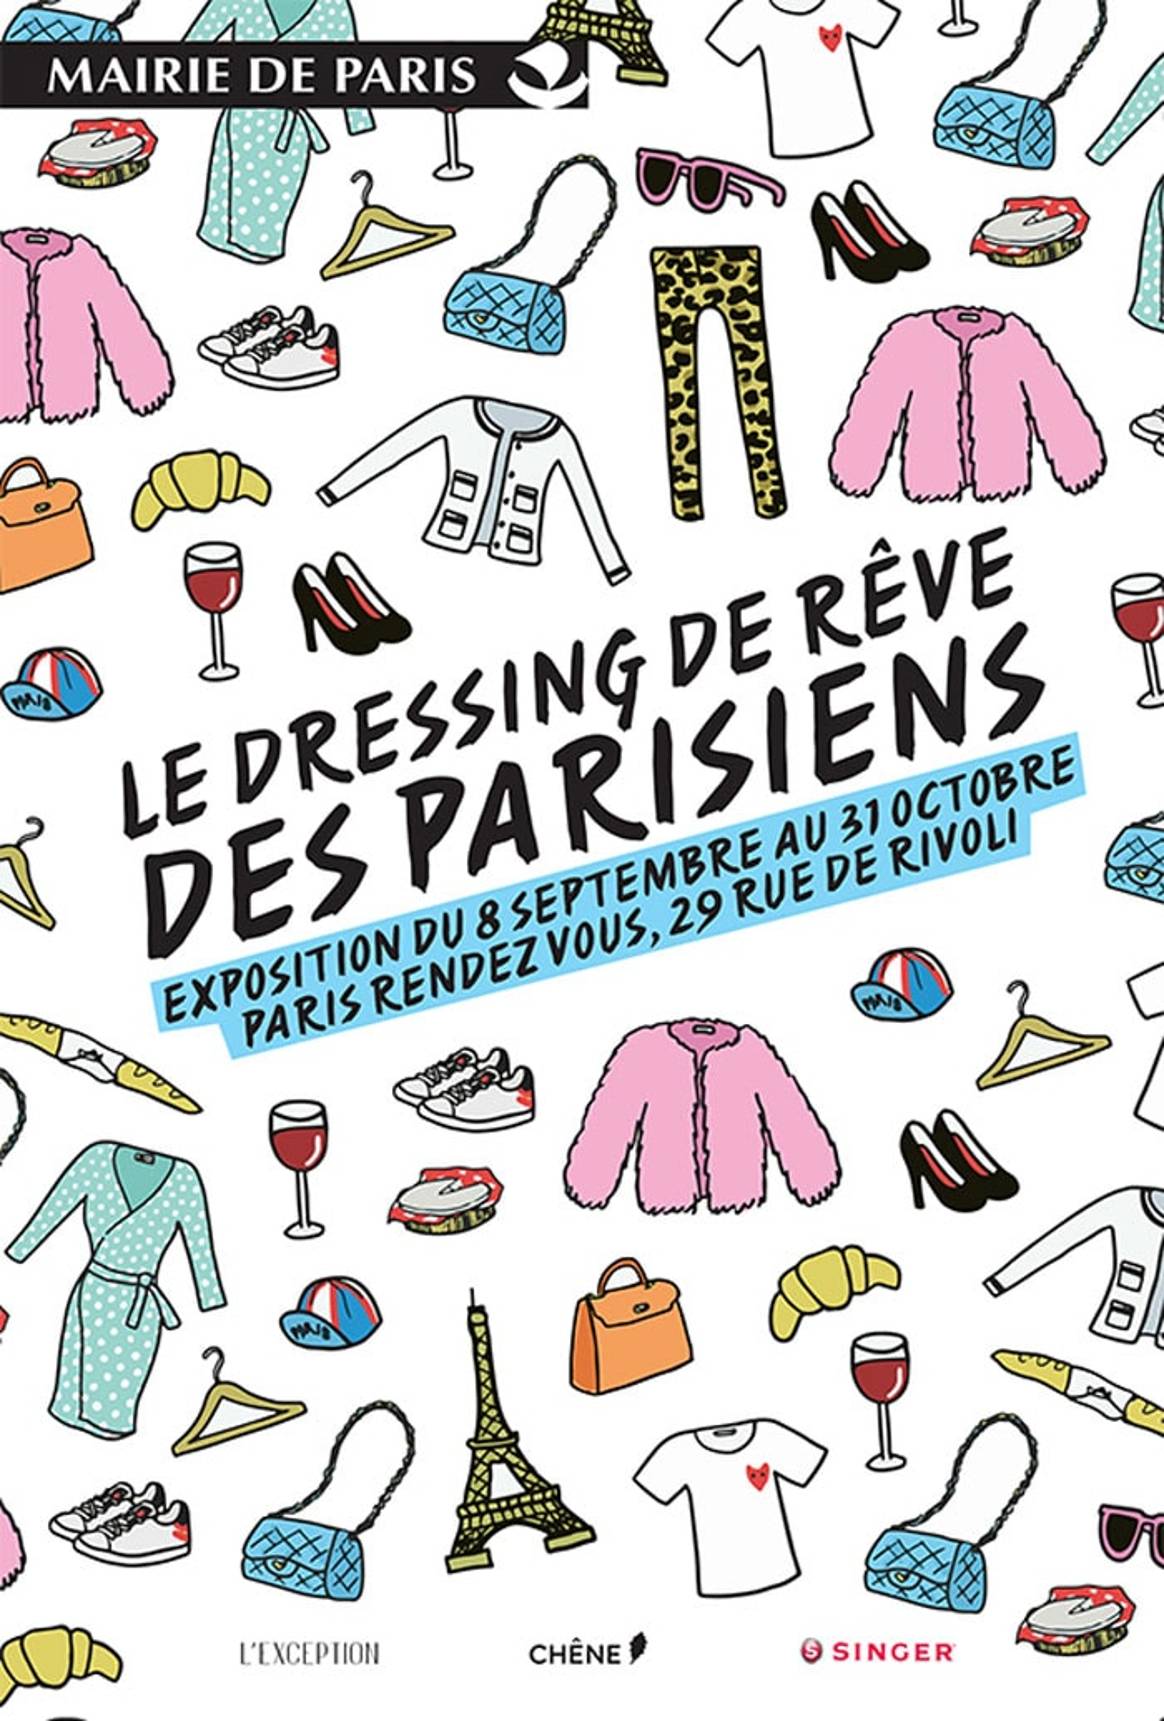 Evènement : Le Dressing de Rêve des Parisiens devient réalité